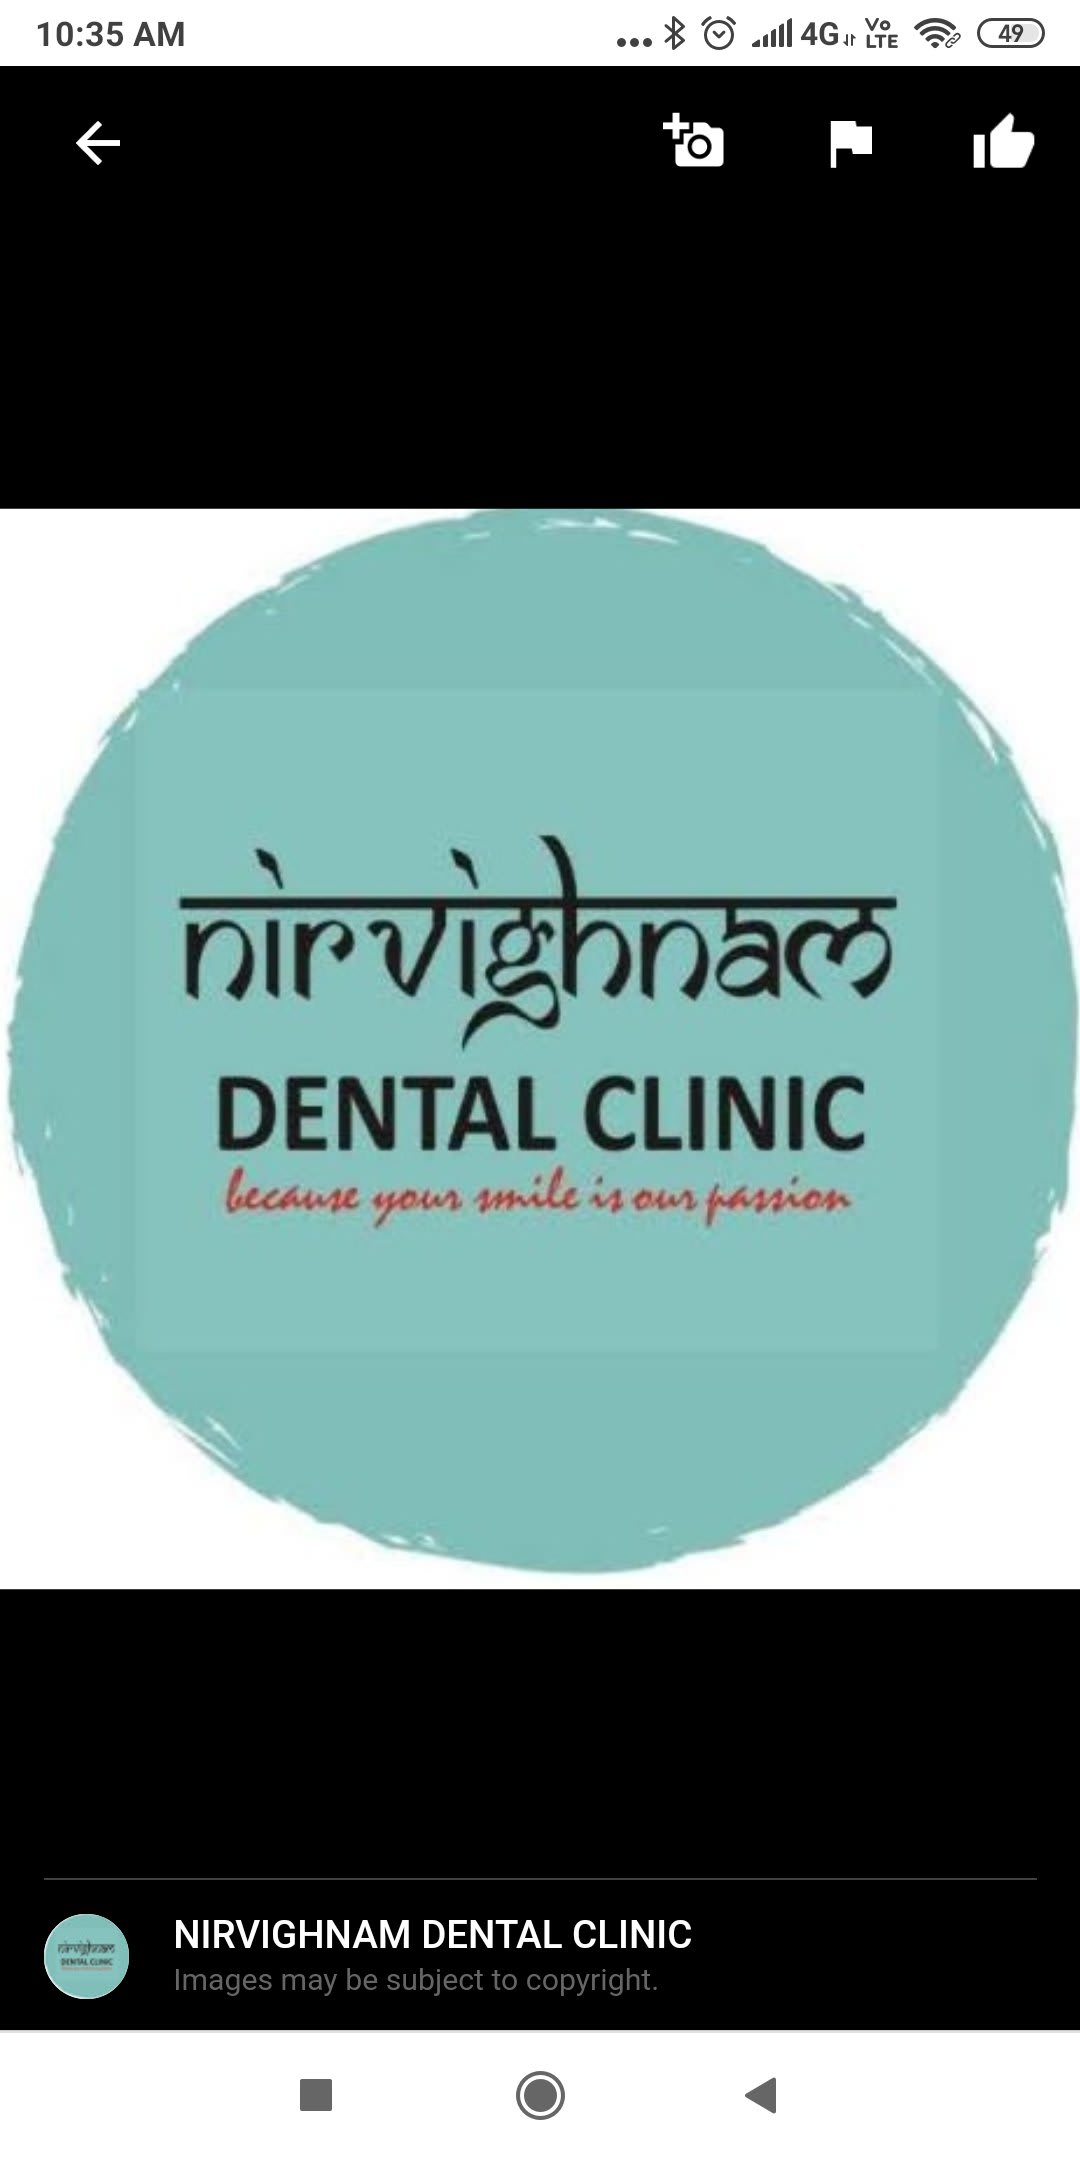 Nirvighnam Dental Clinic